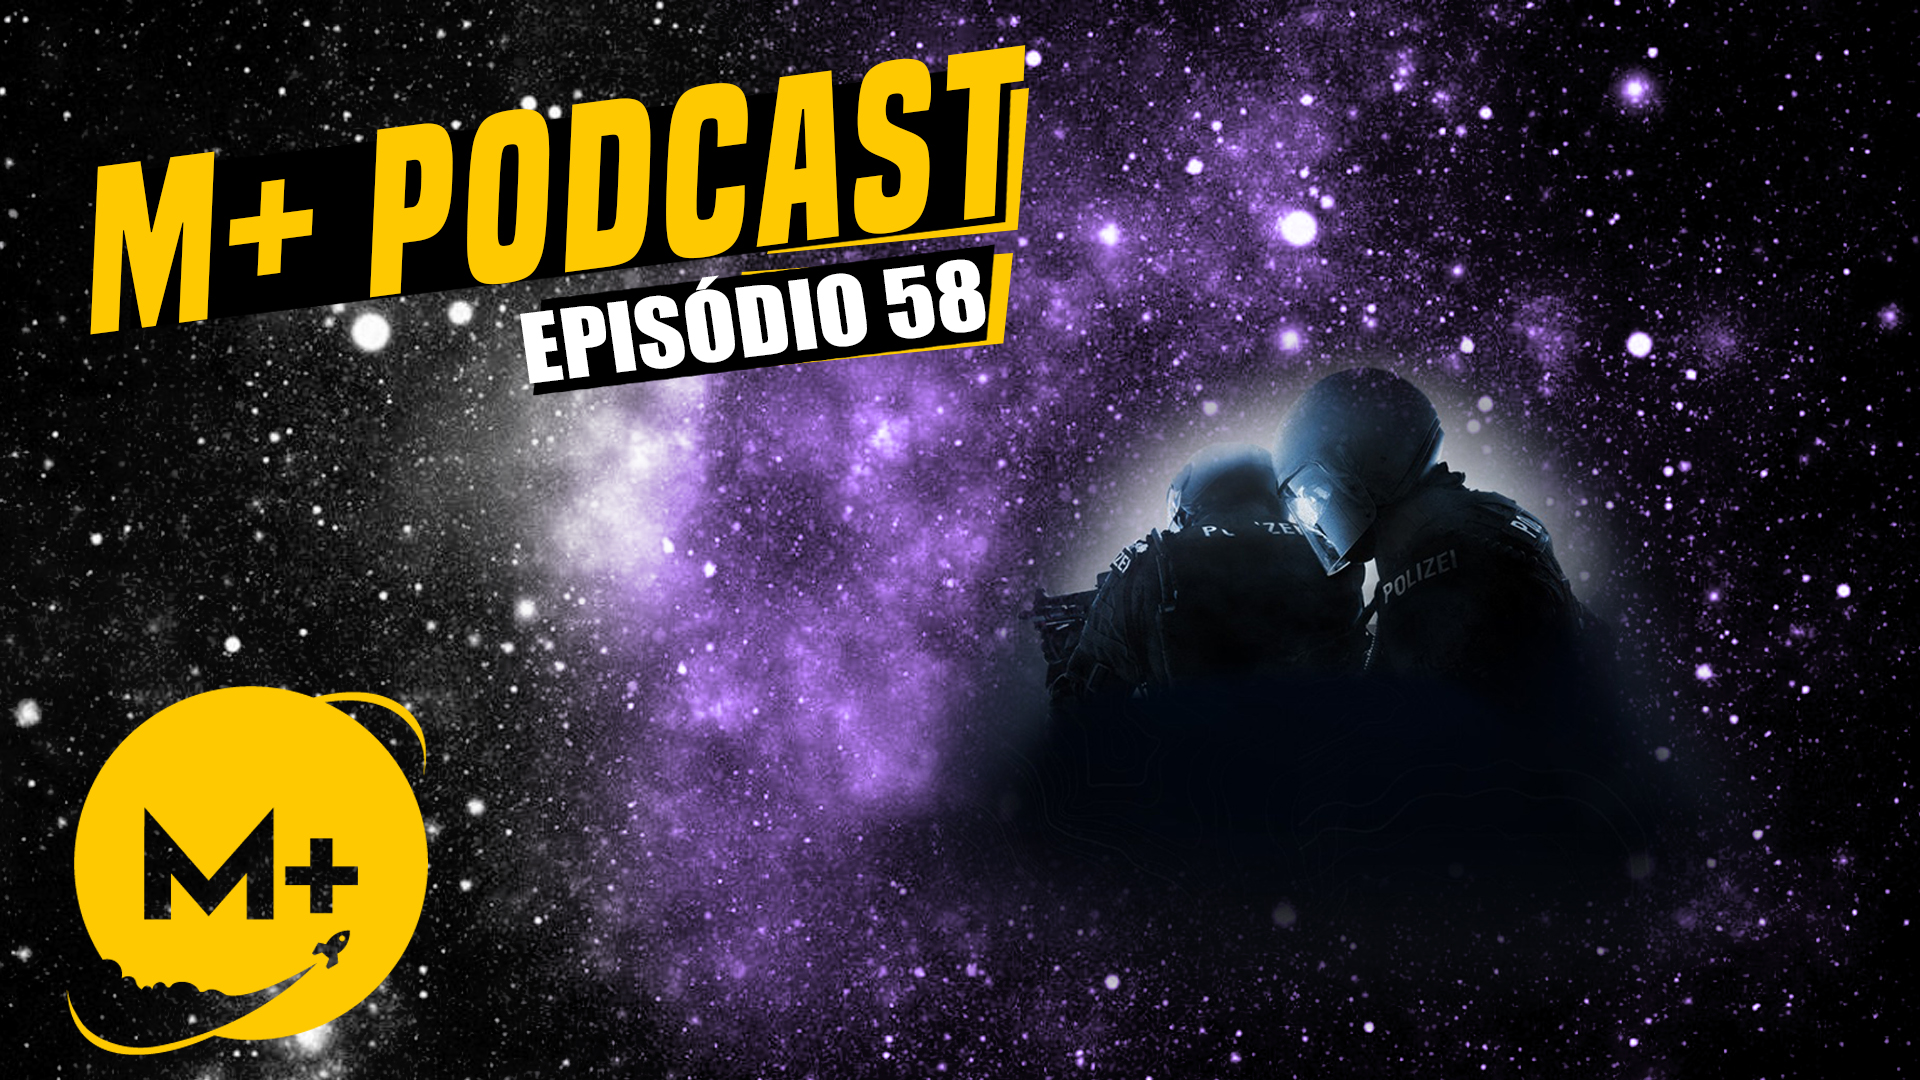 M+ Podcast 58: Counter-Strike de A a Z